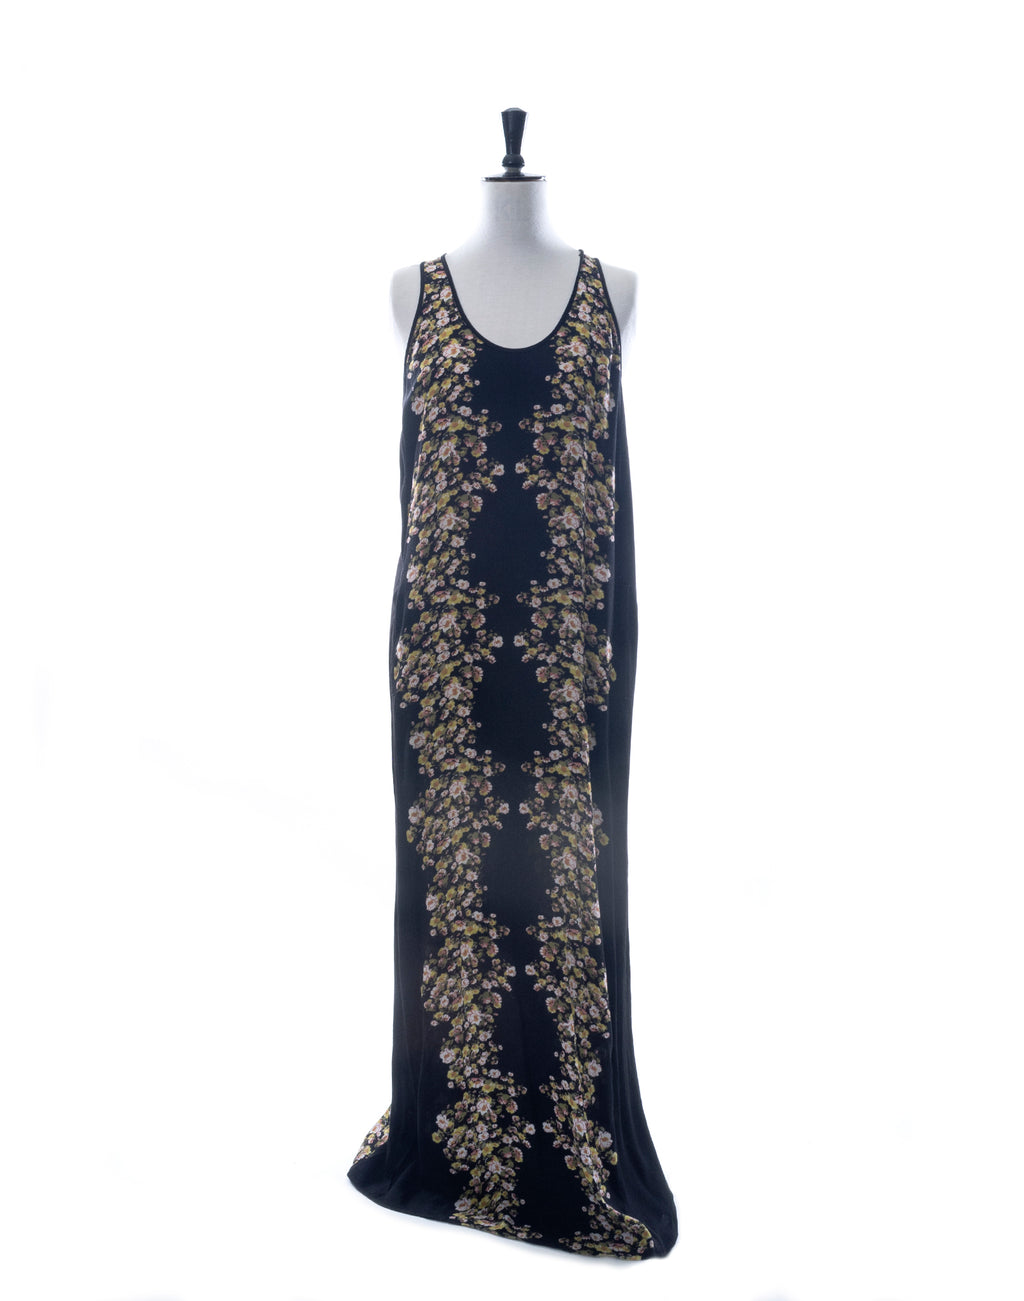 Vintage 00's Black Floral Racerback Maxi Dress - Size S / M